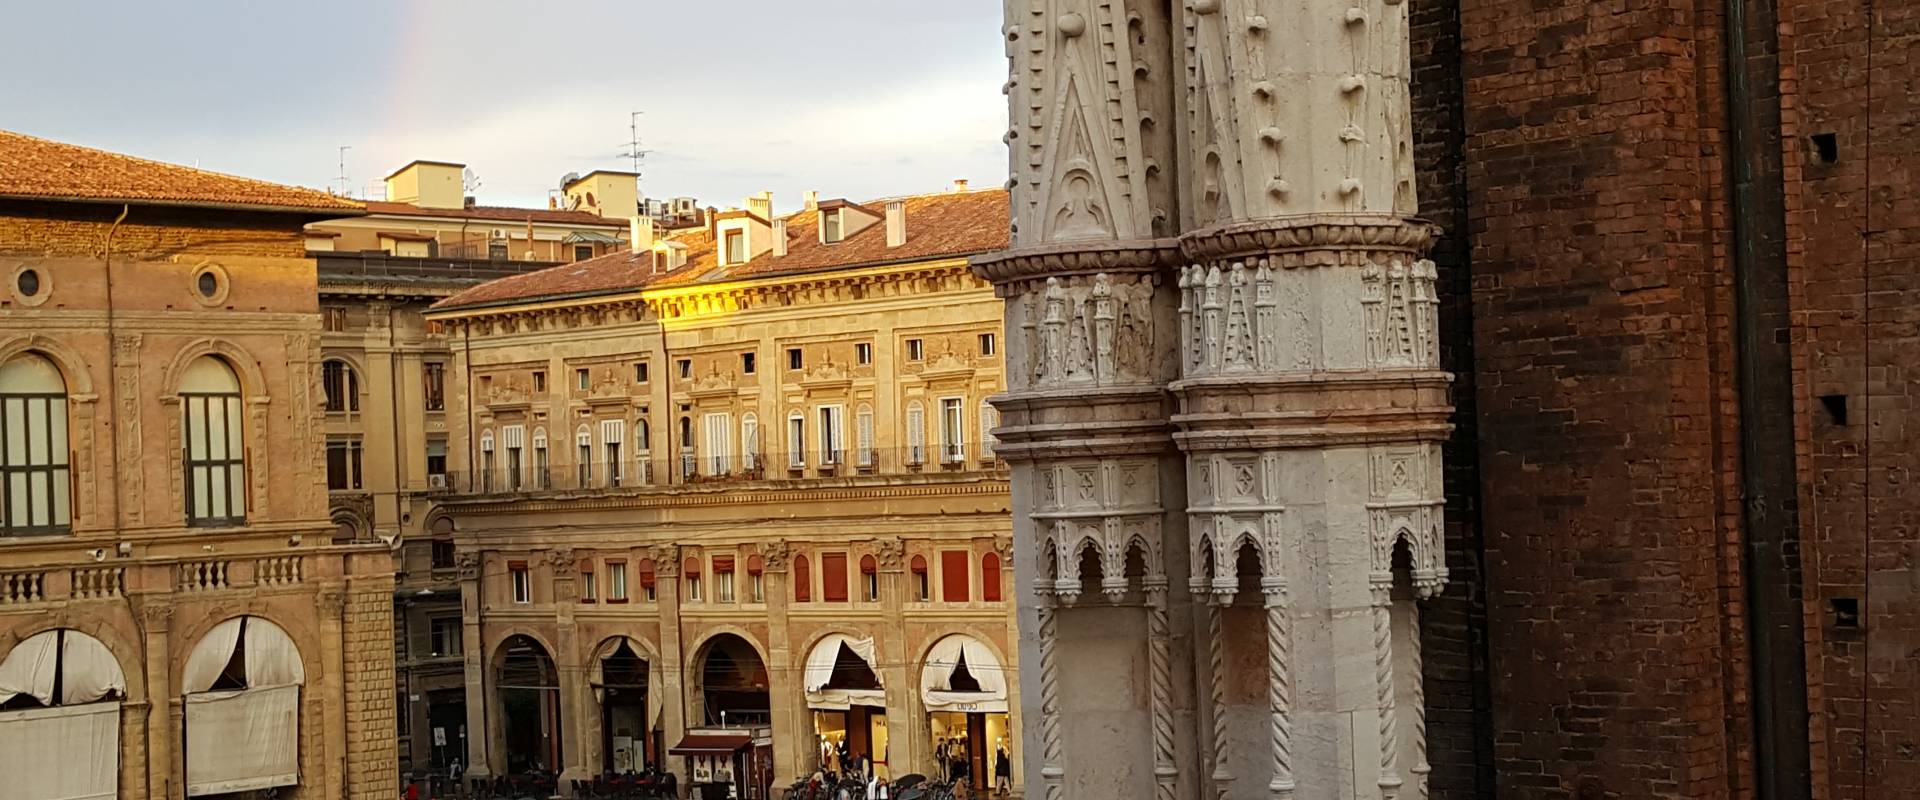 Bologna. Piazza Maggiore da Palazzo Notai 3 foto di Raffacossa